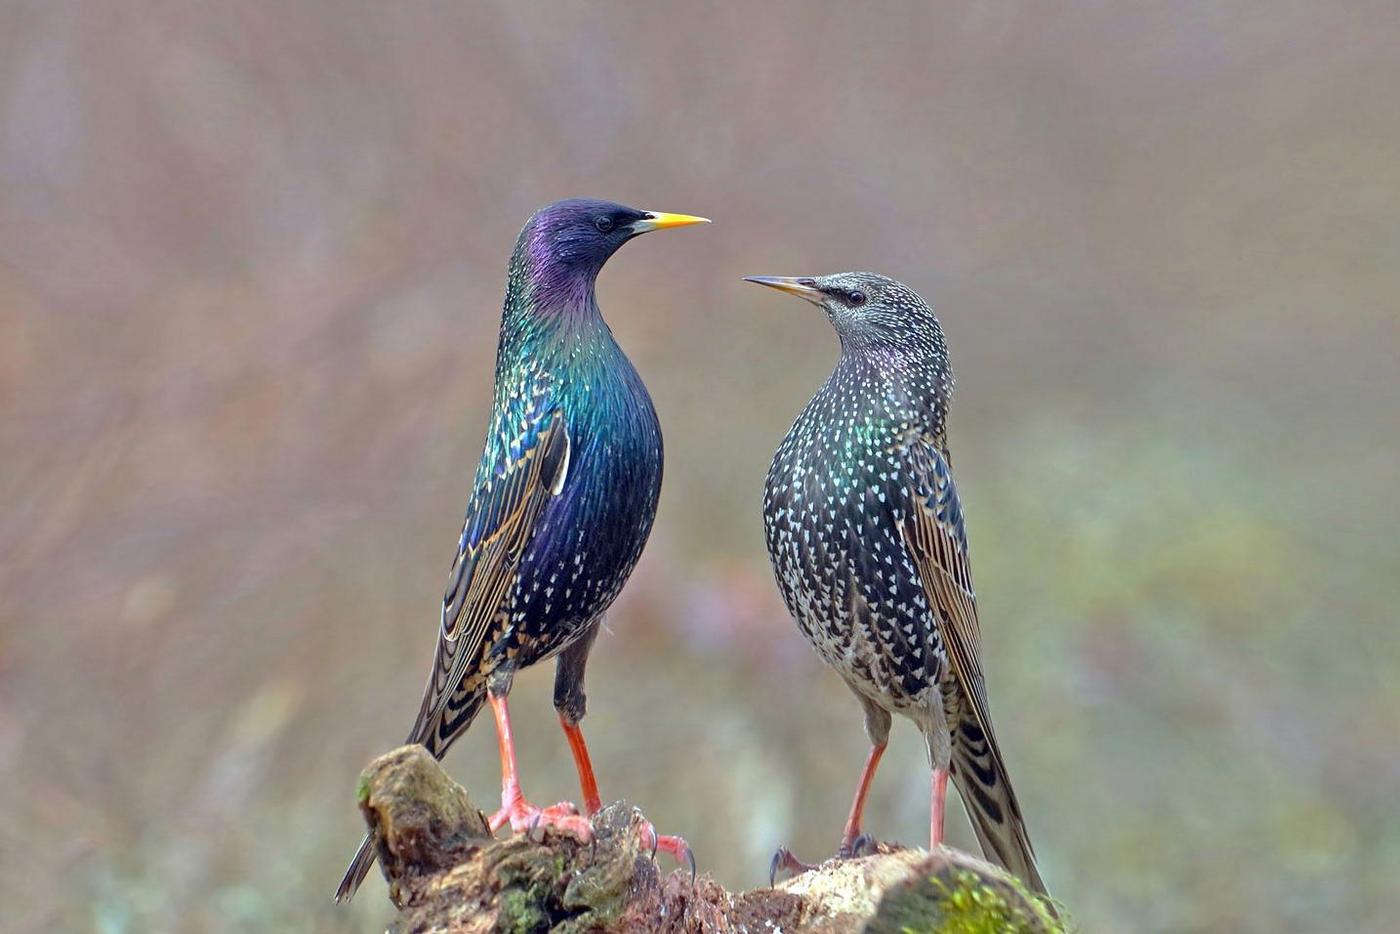 starlings in summer plumage